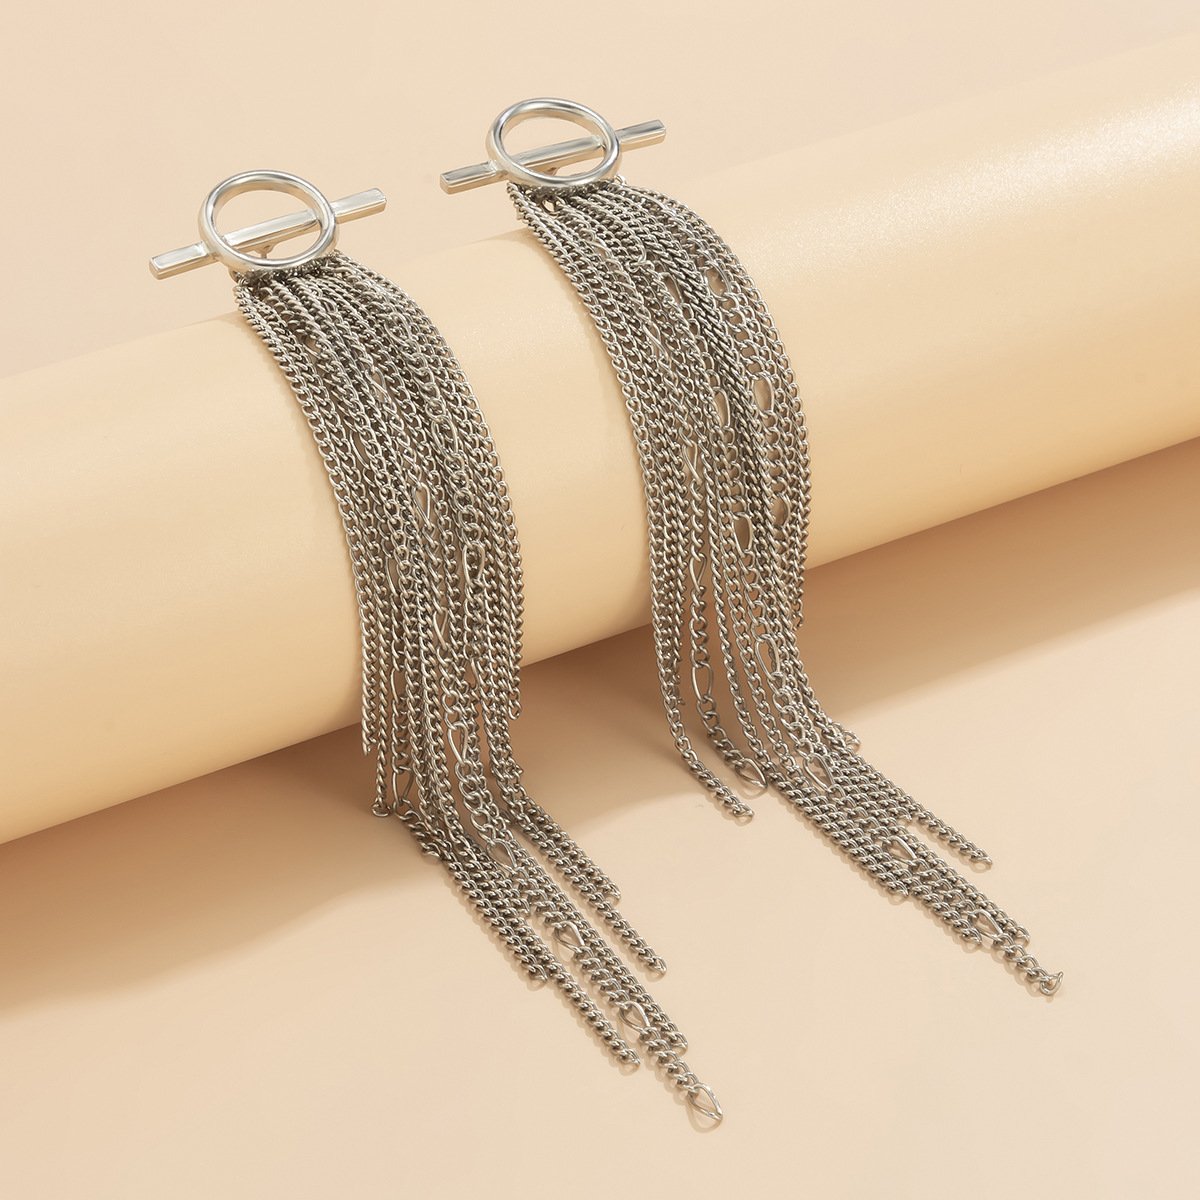 Vintage Tassels Design Metal Drop Earrings-Earrings-JEWELRYSHEOWN